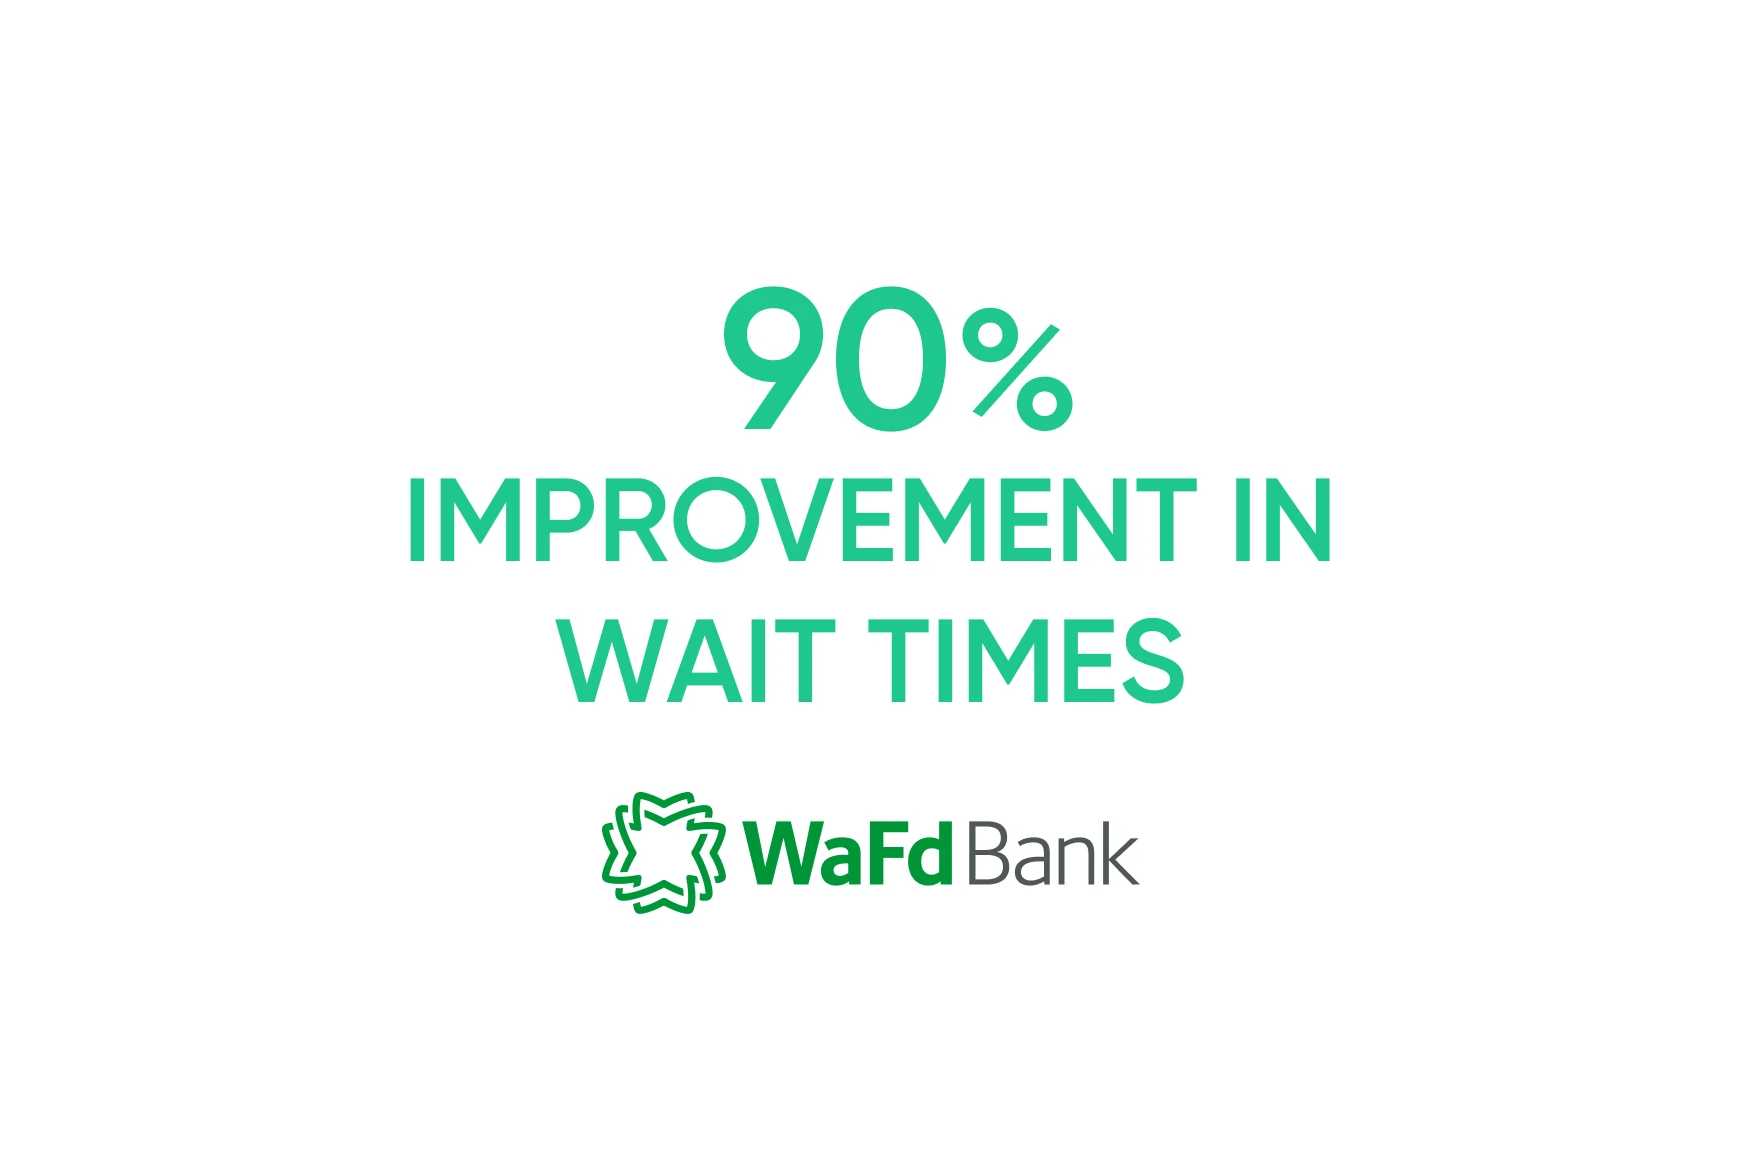 WaFd Bank: redução do tempo de atendimento utilizando a biometria de voz para a autenticação